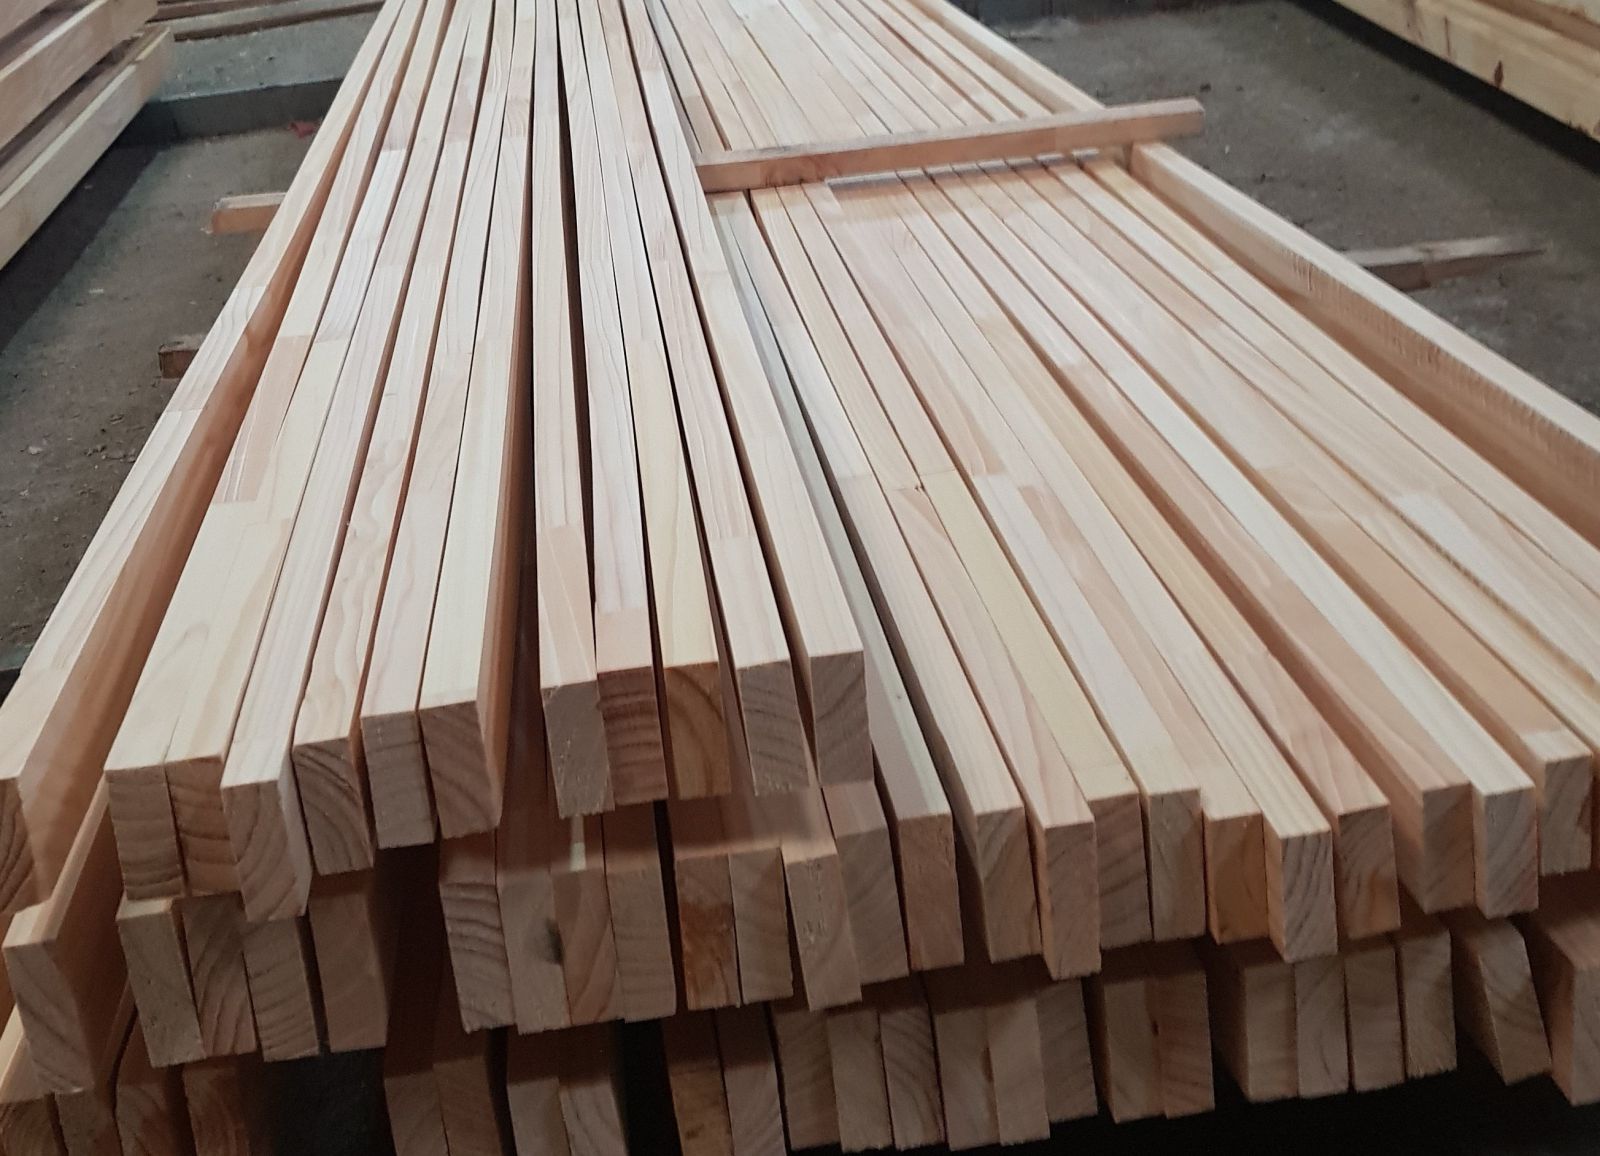 Kho gỗ nhập khẩu tại TPHCM